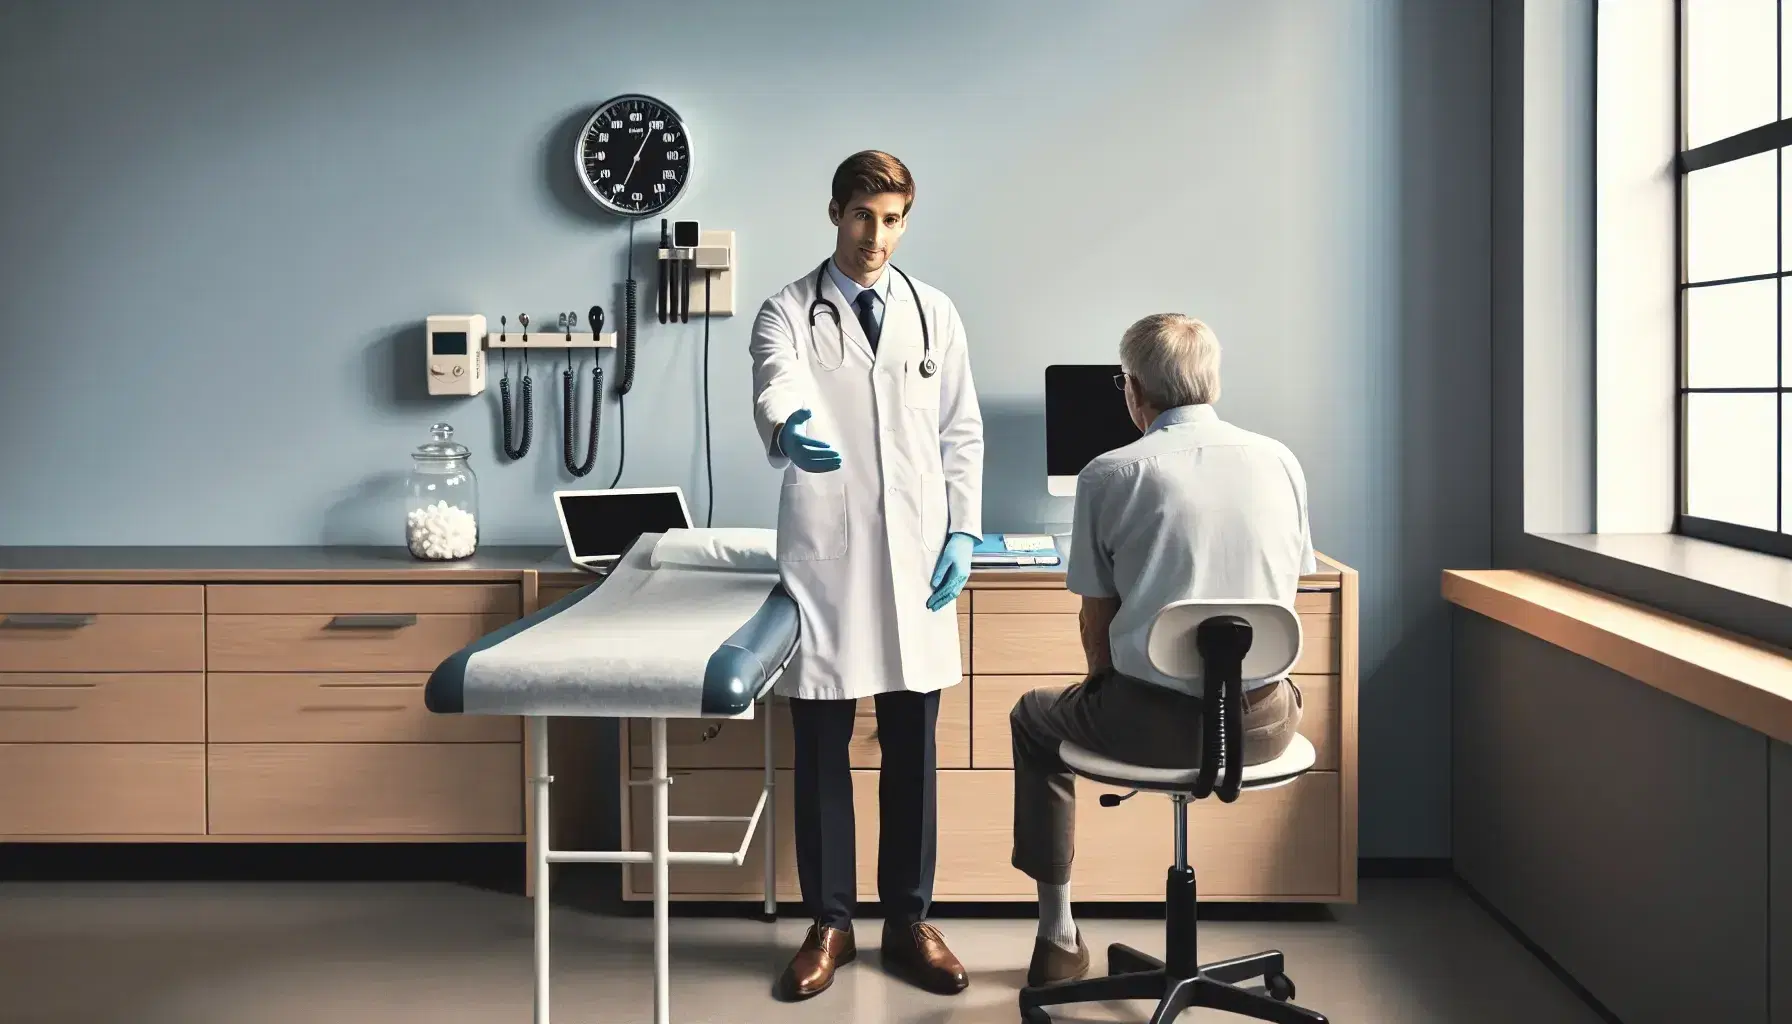 Doctor en consulta médica extendiendo la mano hacia paciente sentado, con mesa de examen, escritorio y sfigmomanómetro en la pared.